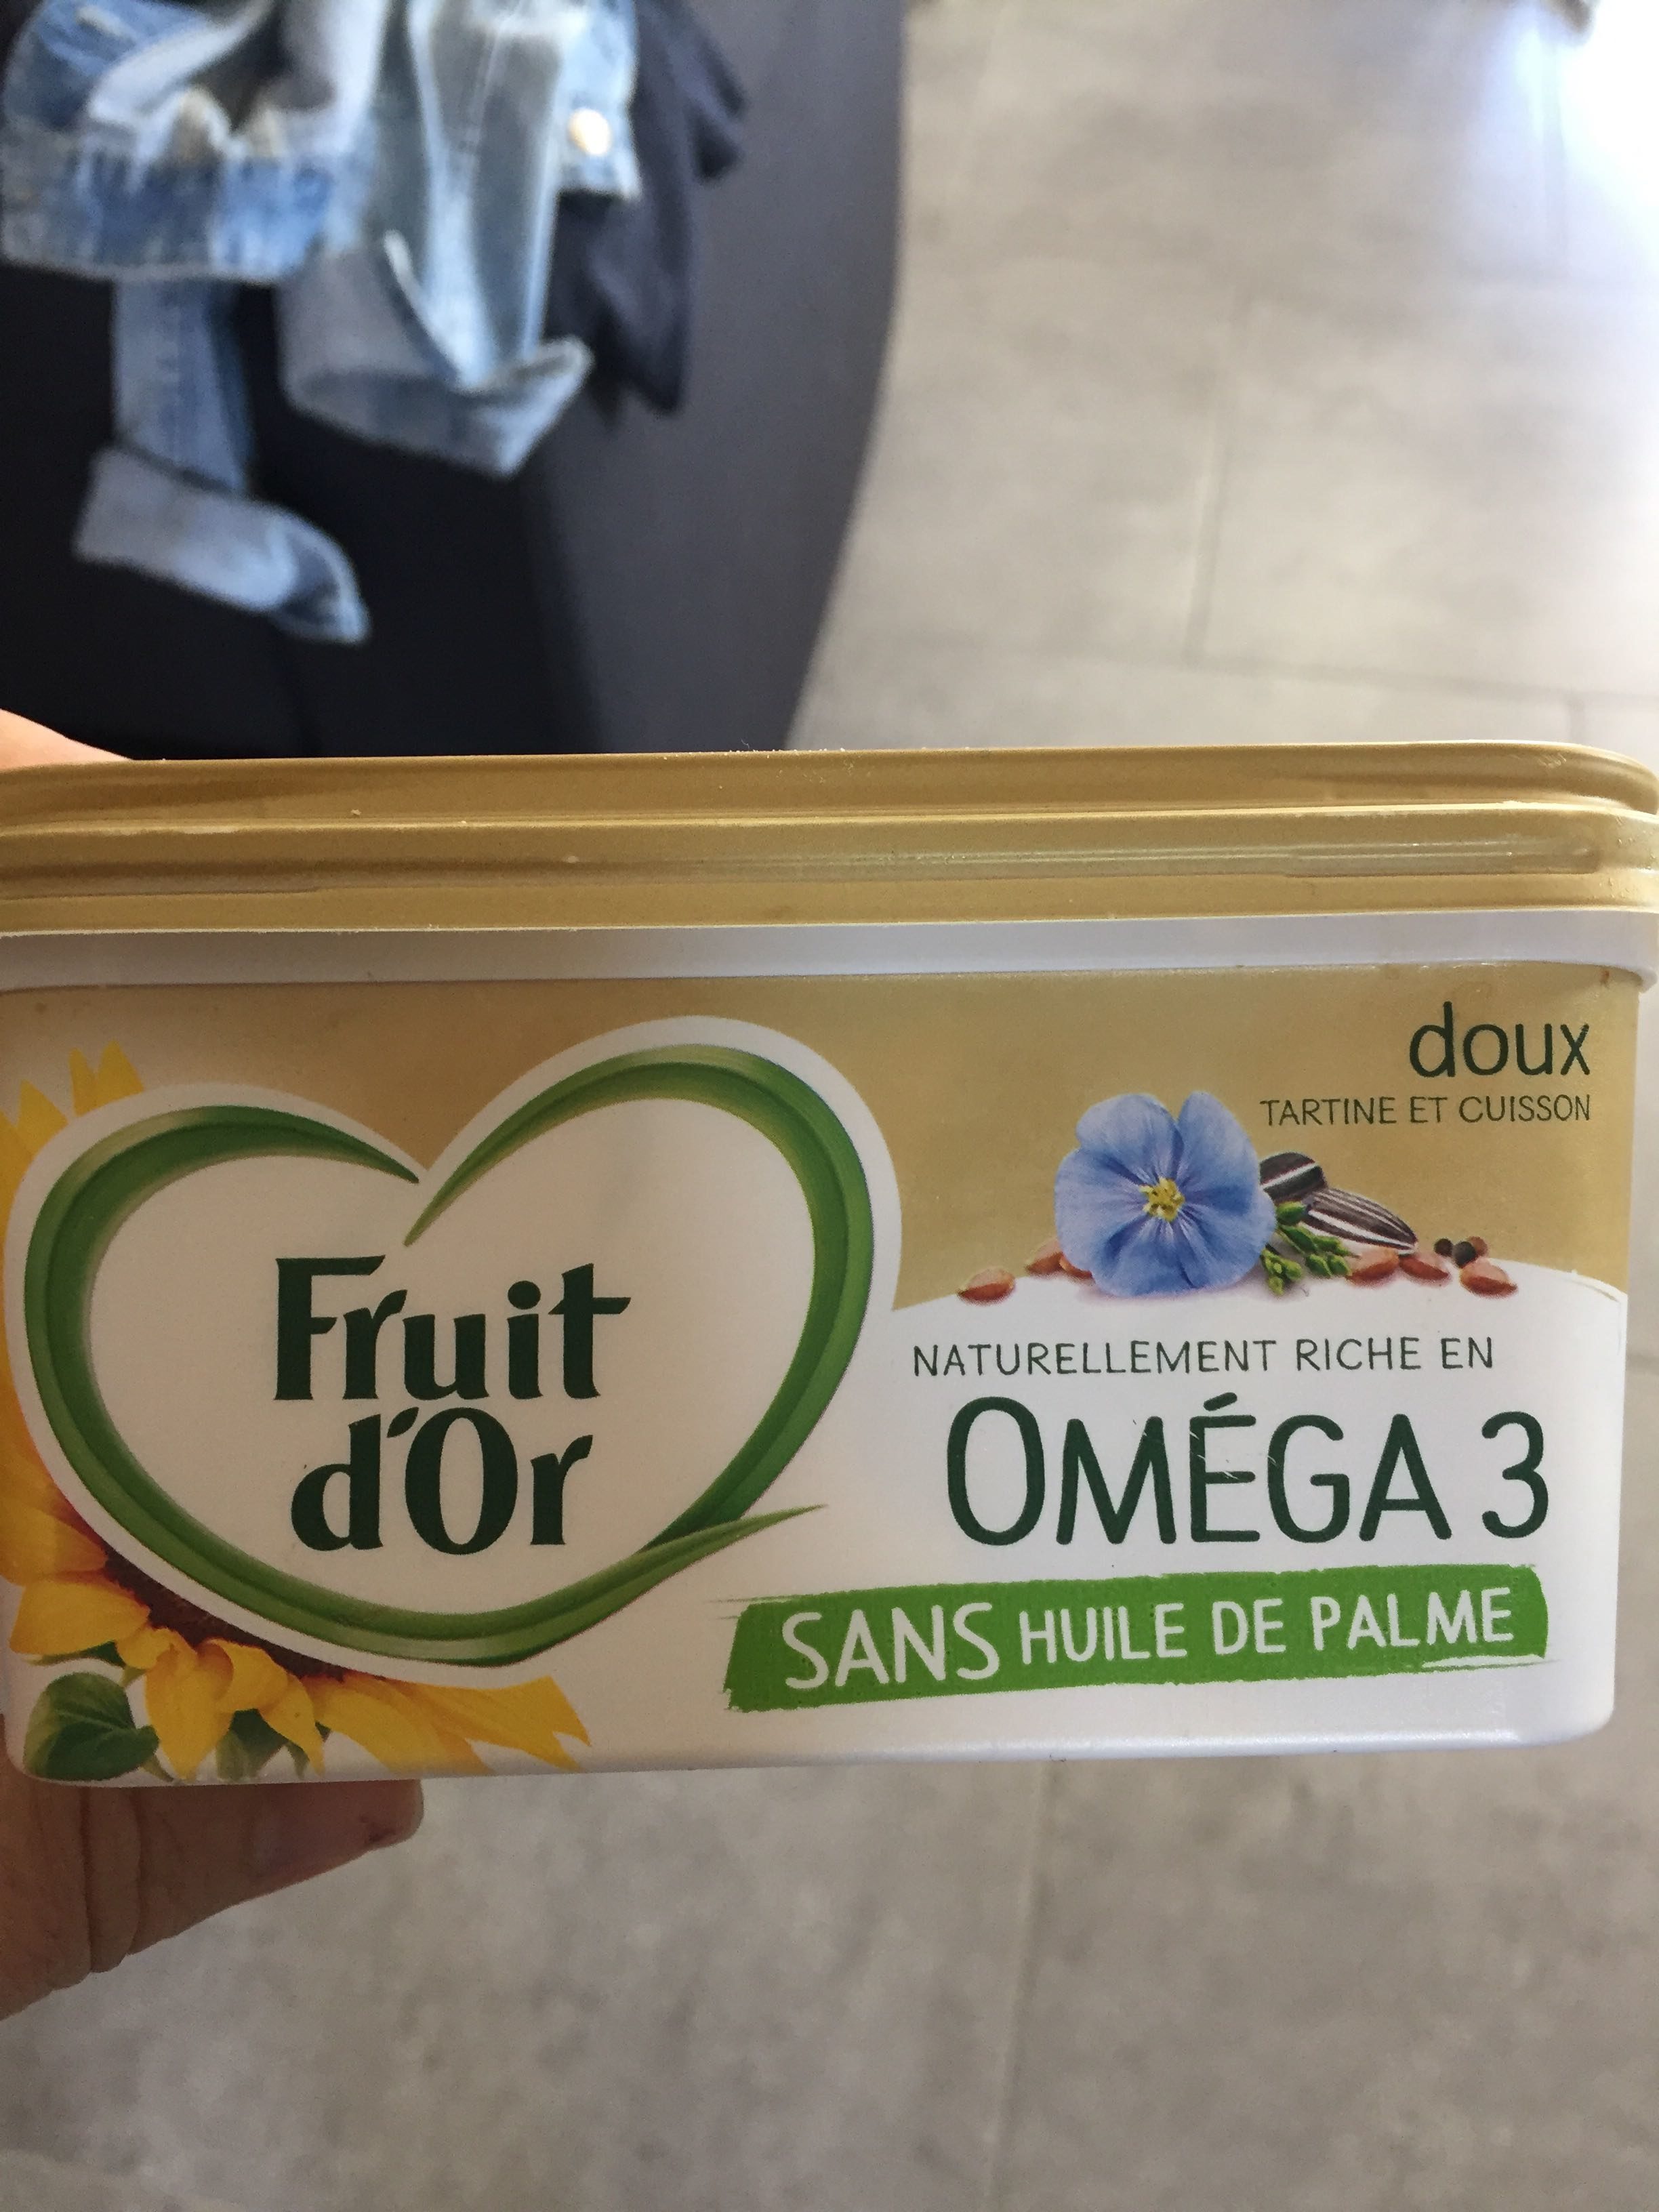 Fruit d’or oméga 3 - Produto - fr